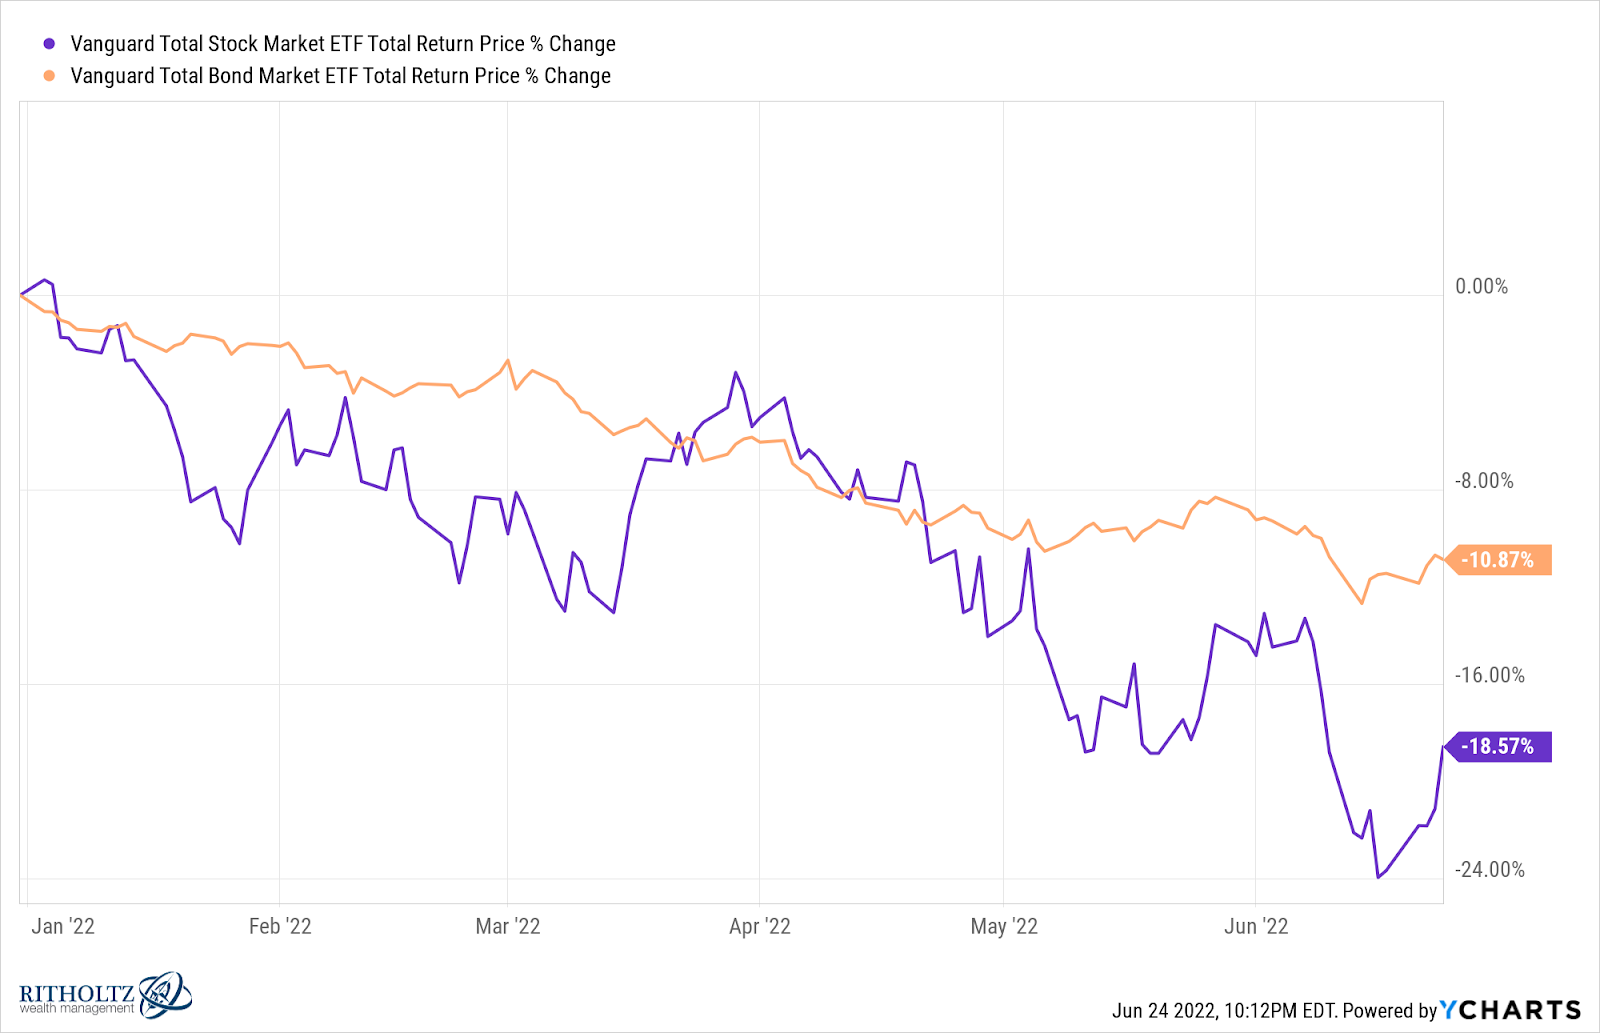 Vanguard Total Stock and Bond market between January and Jun 2022.